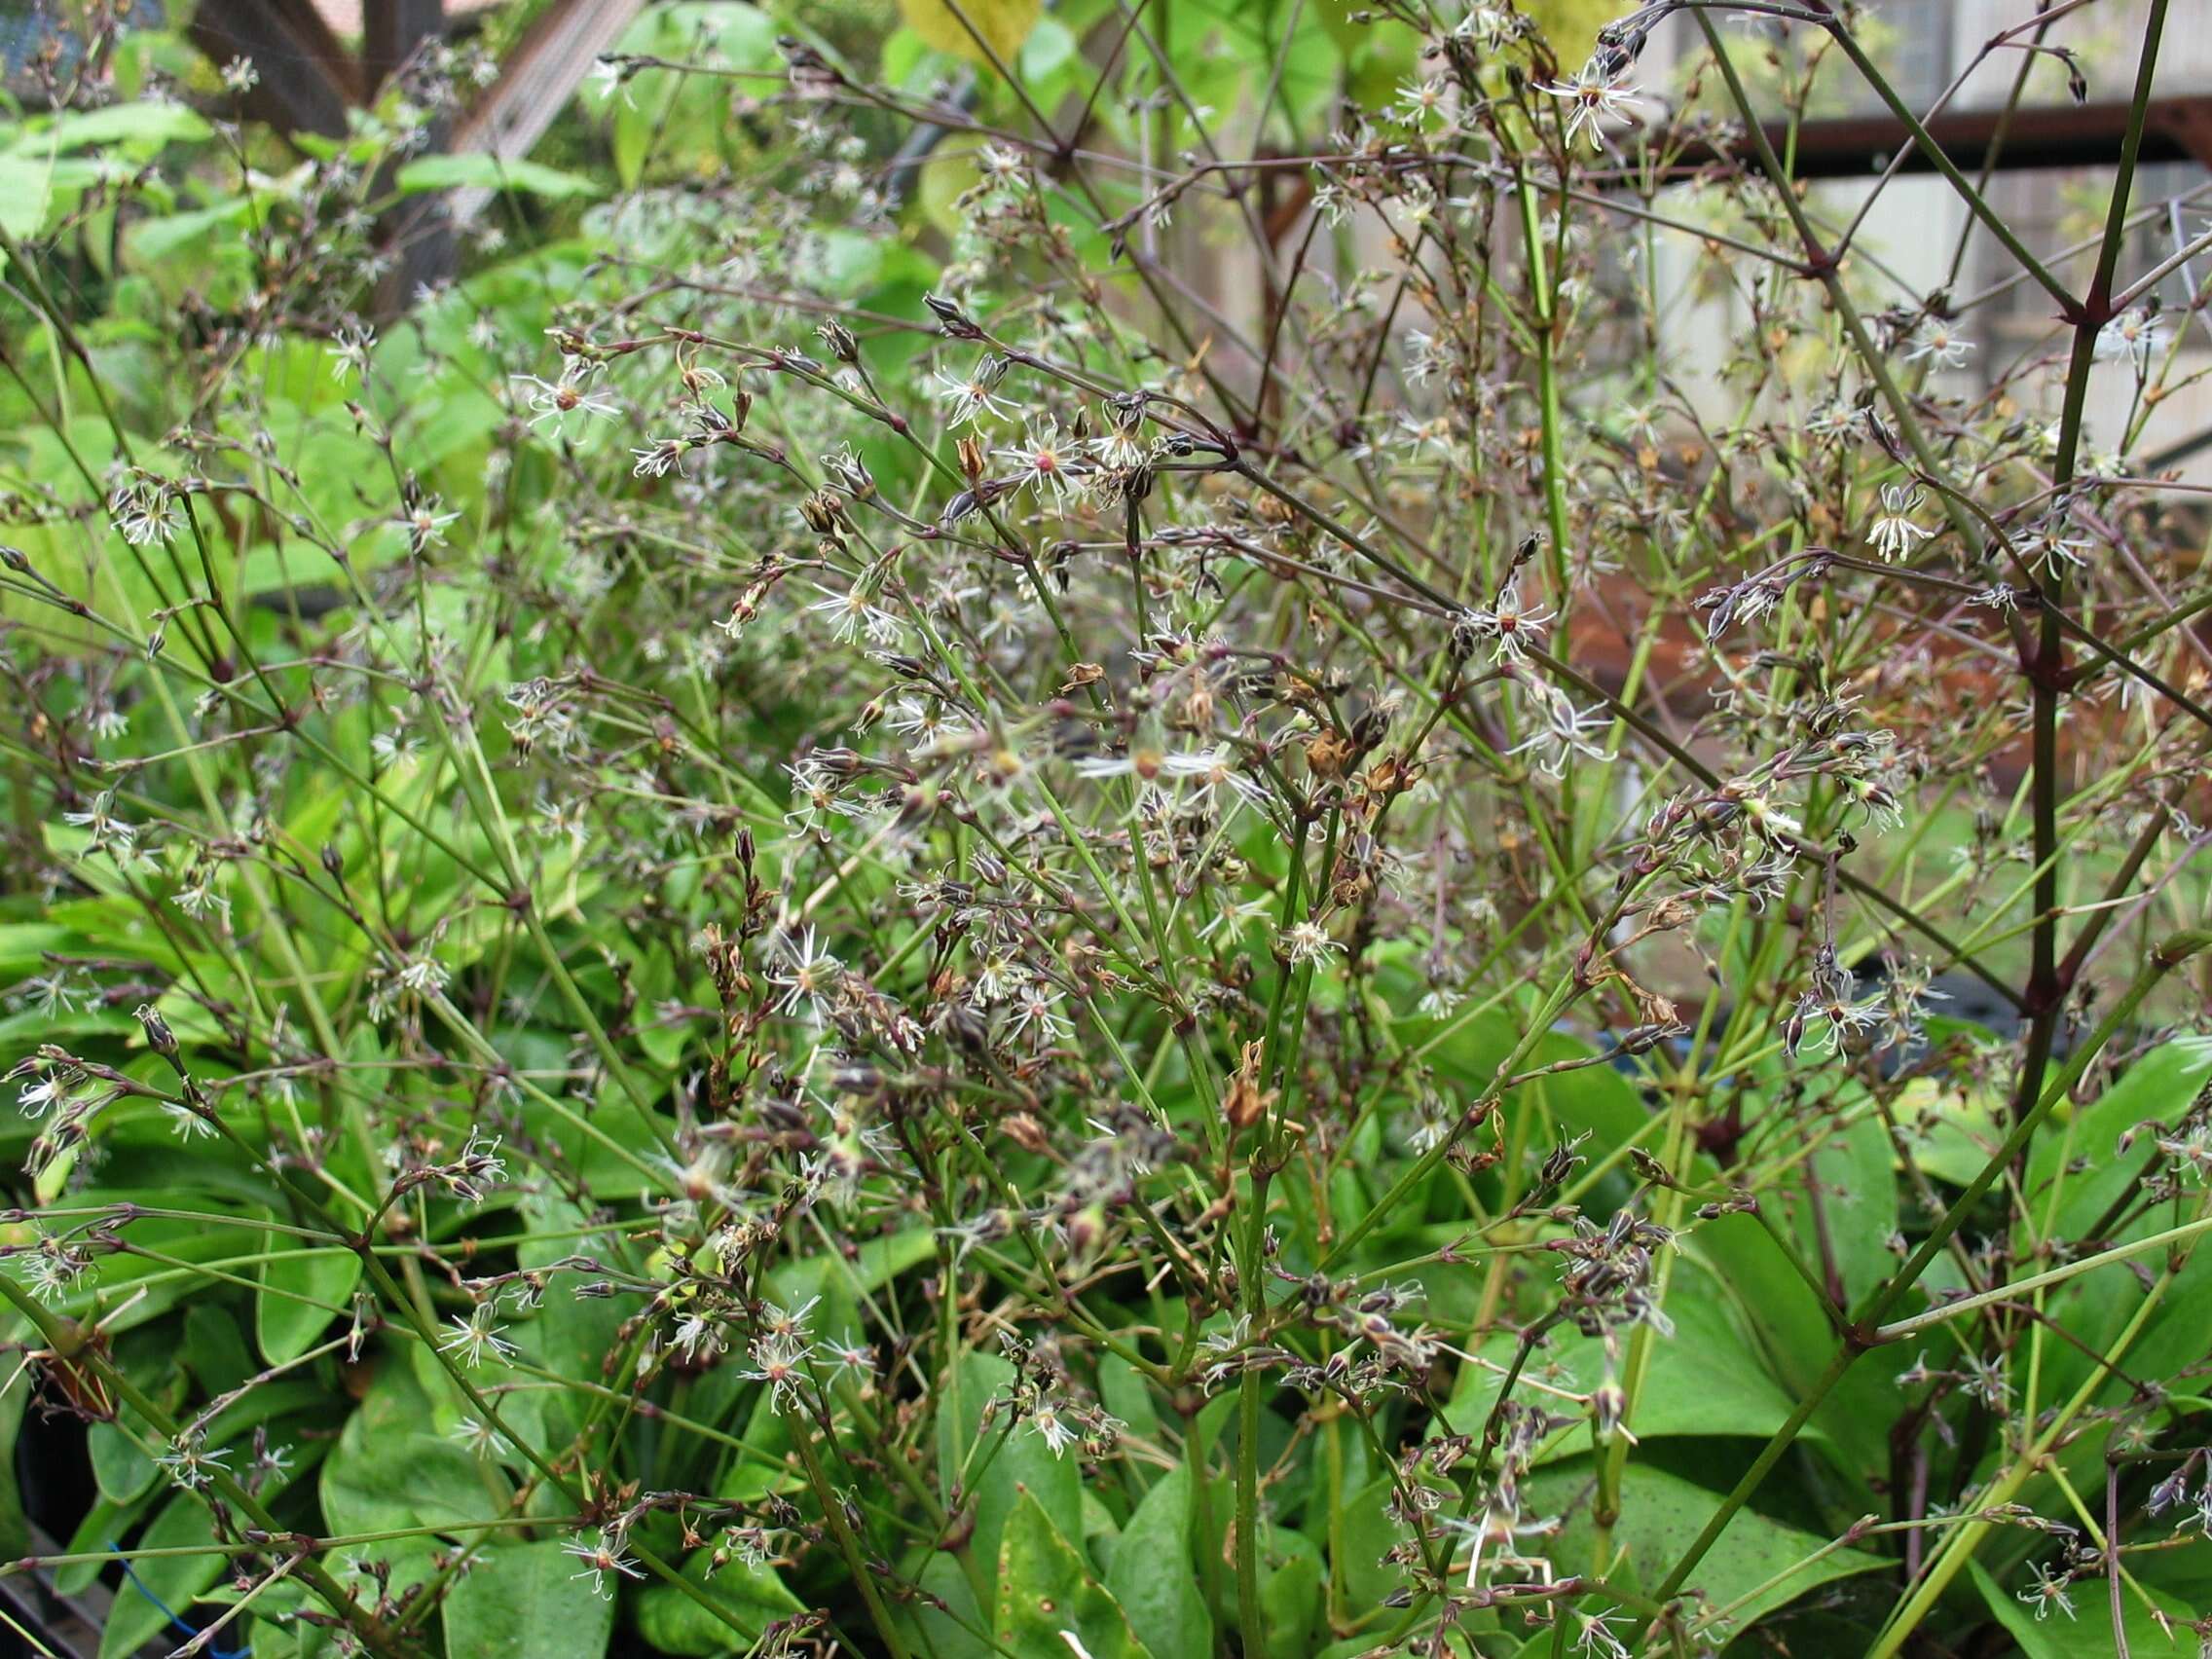 Image of Oahu schiedea